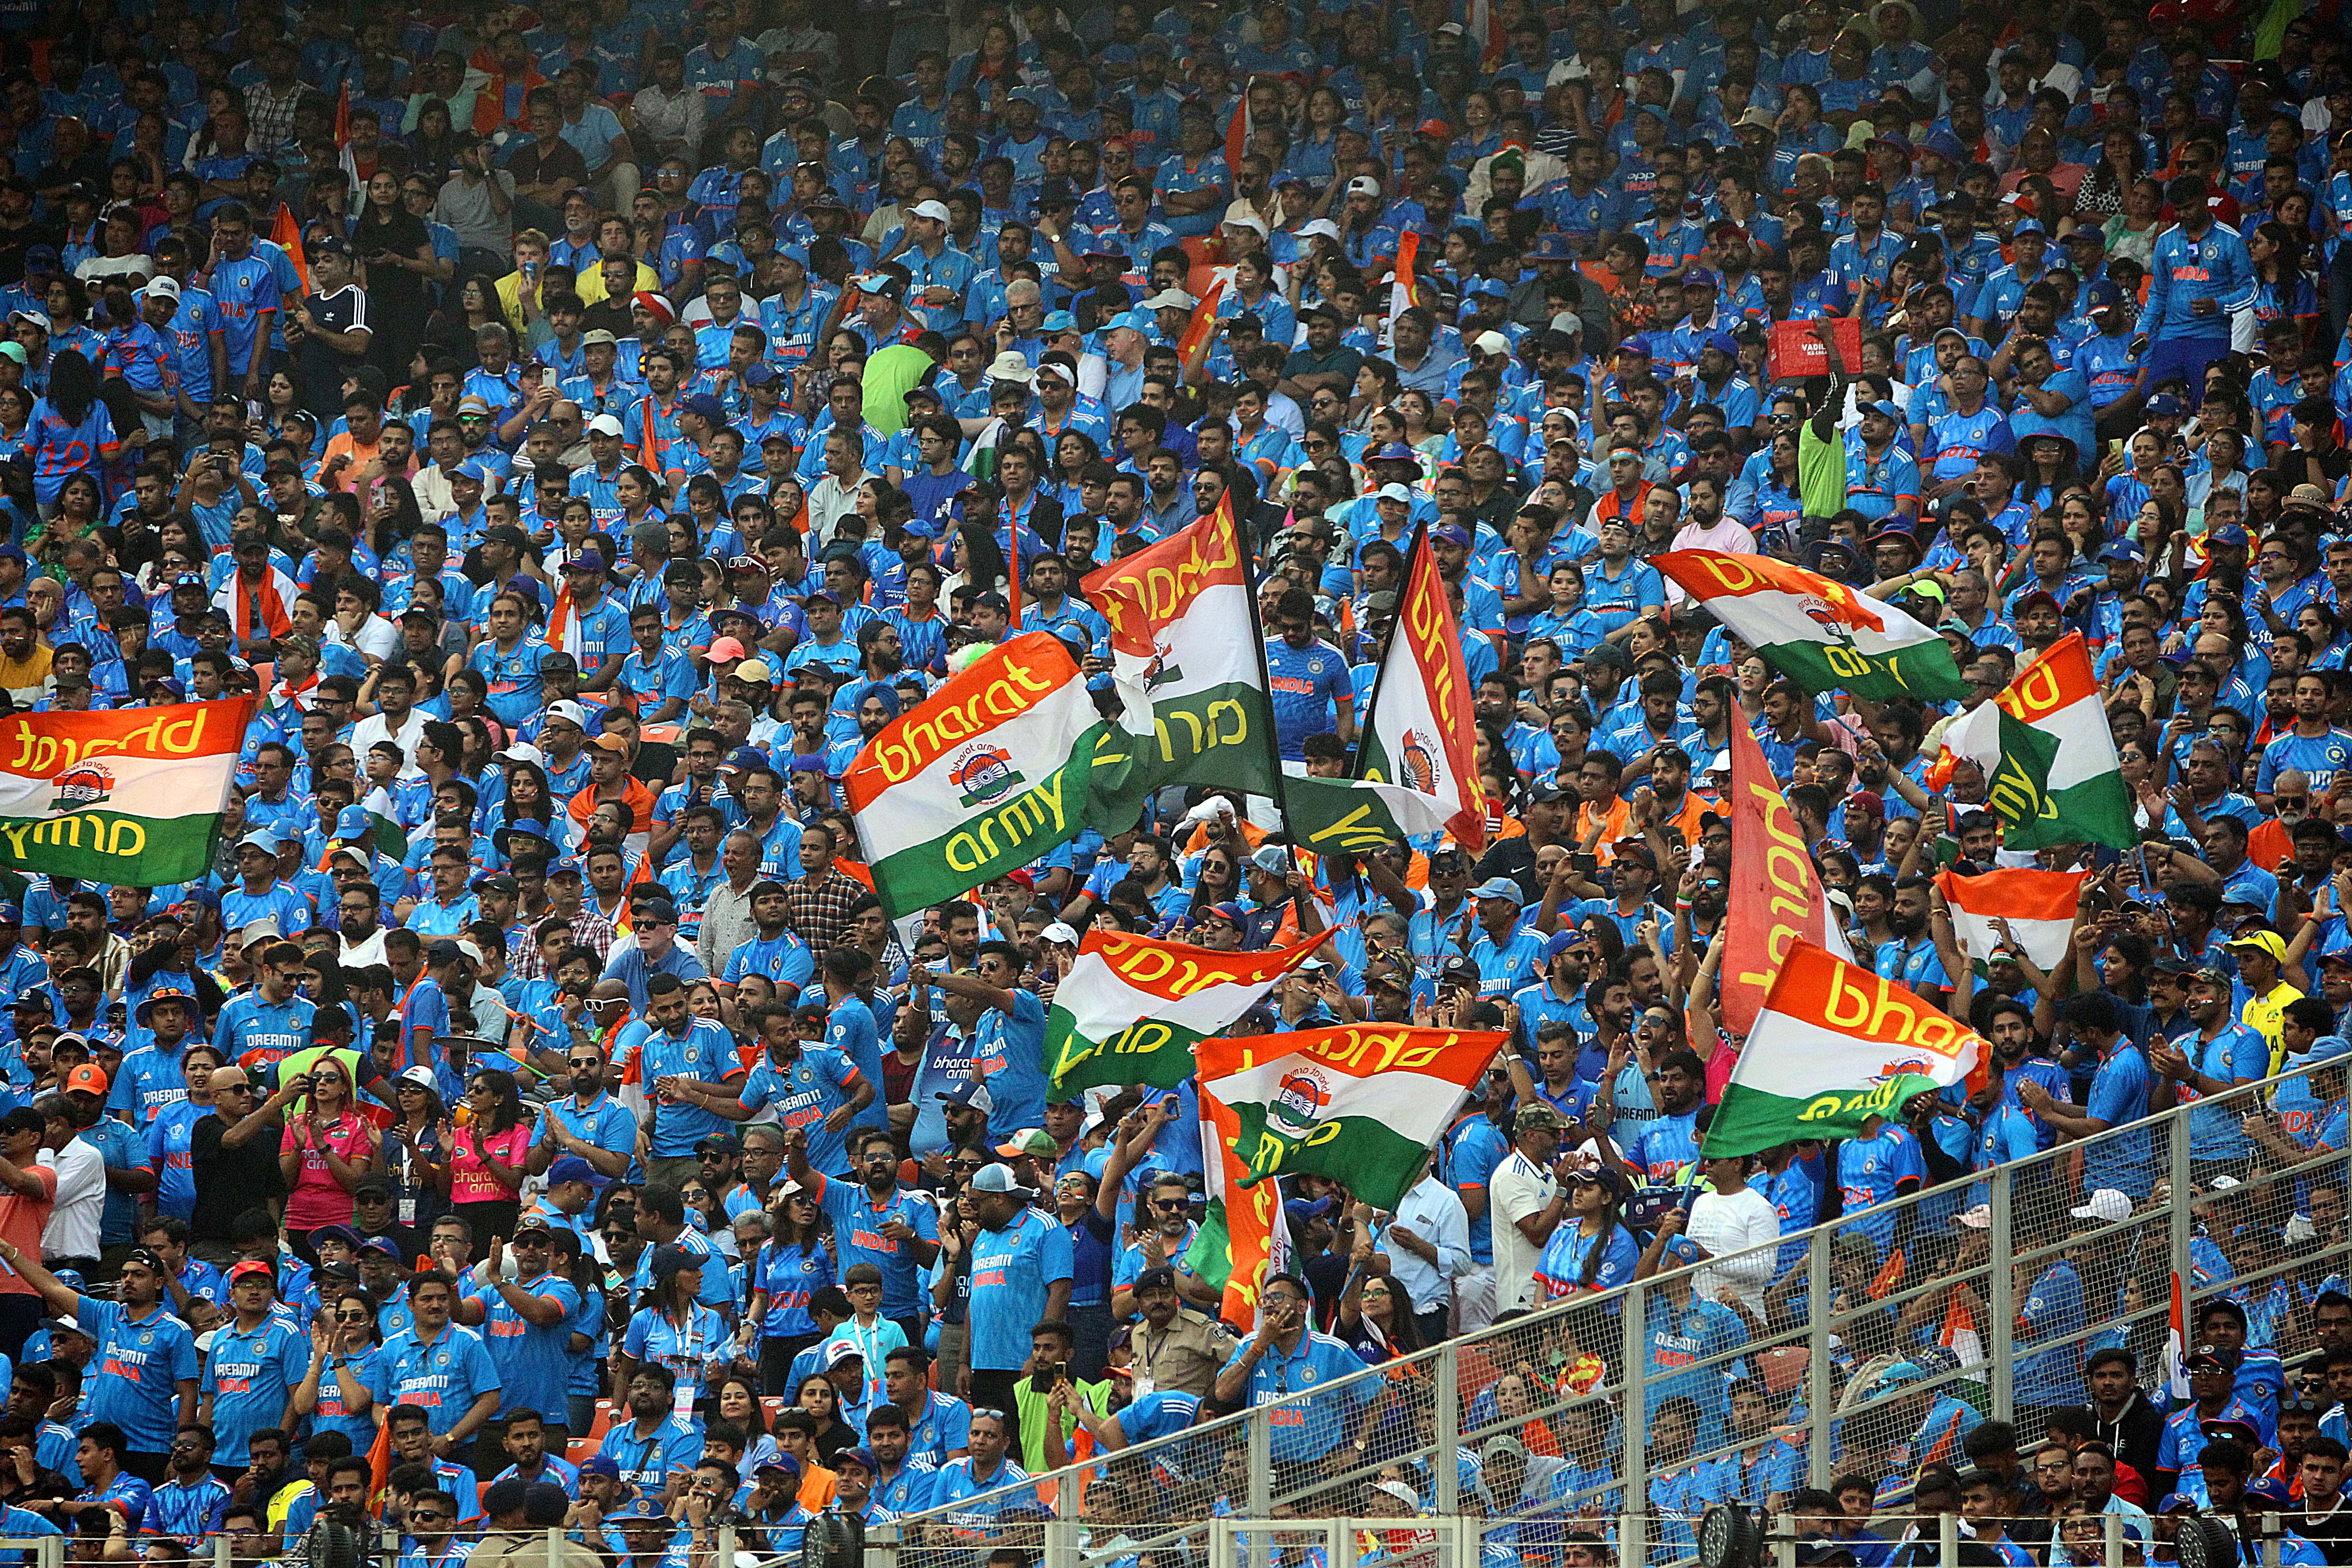 अहमदाबादमधील नरेंद्र मोदी स्टेडियमवर भारत आणि ऑस्ट्रेलिया यांच्यातील आयसीसी पुरुष क्रिकेट विश्वचषक अंतिम सामना पाहण्यासाठी क्रीडाप्रेमींनी गर्दी केली होती. तर १ अब्जाहून अधिक लोकांनी हा सामना विविध माध्यमांद्वारे पाहिला. (निर्मल हरिंद्रन : एक्सप्रेस फोटो)